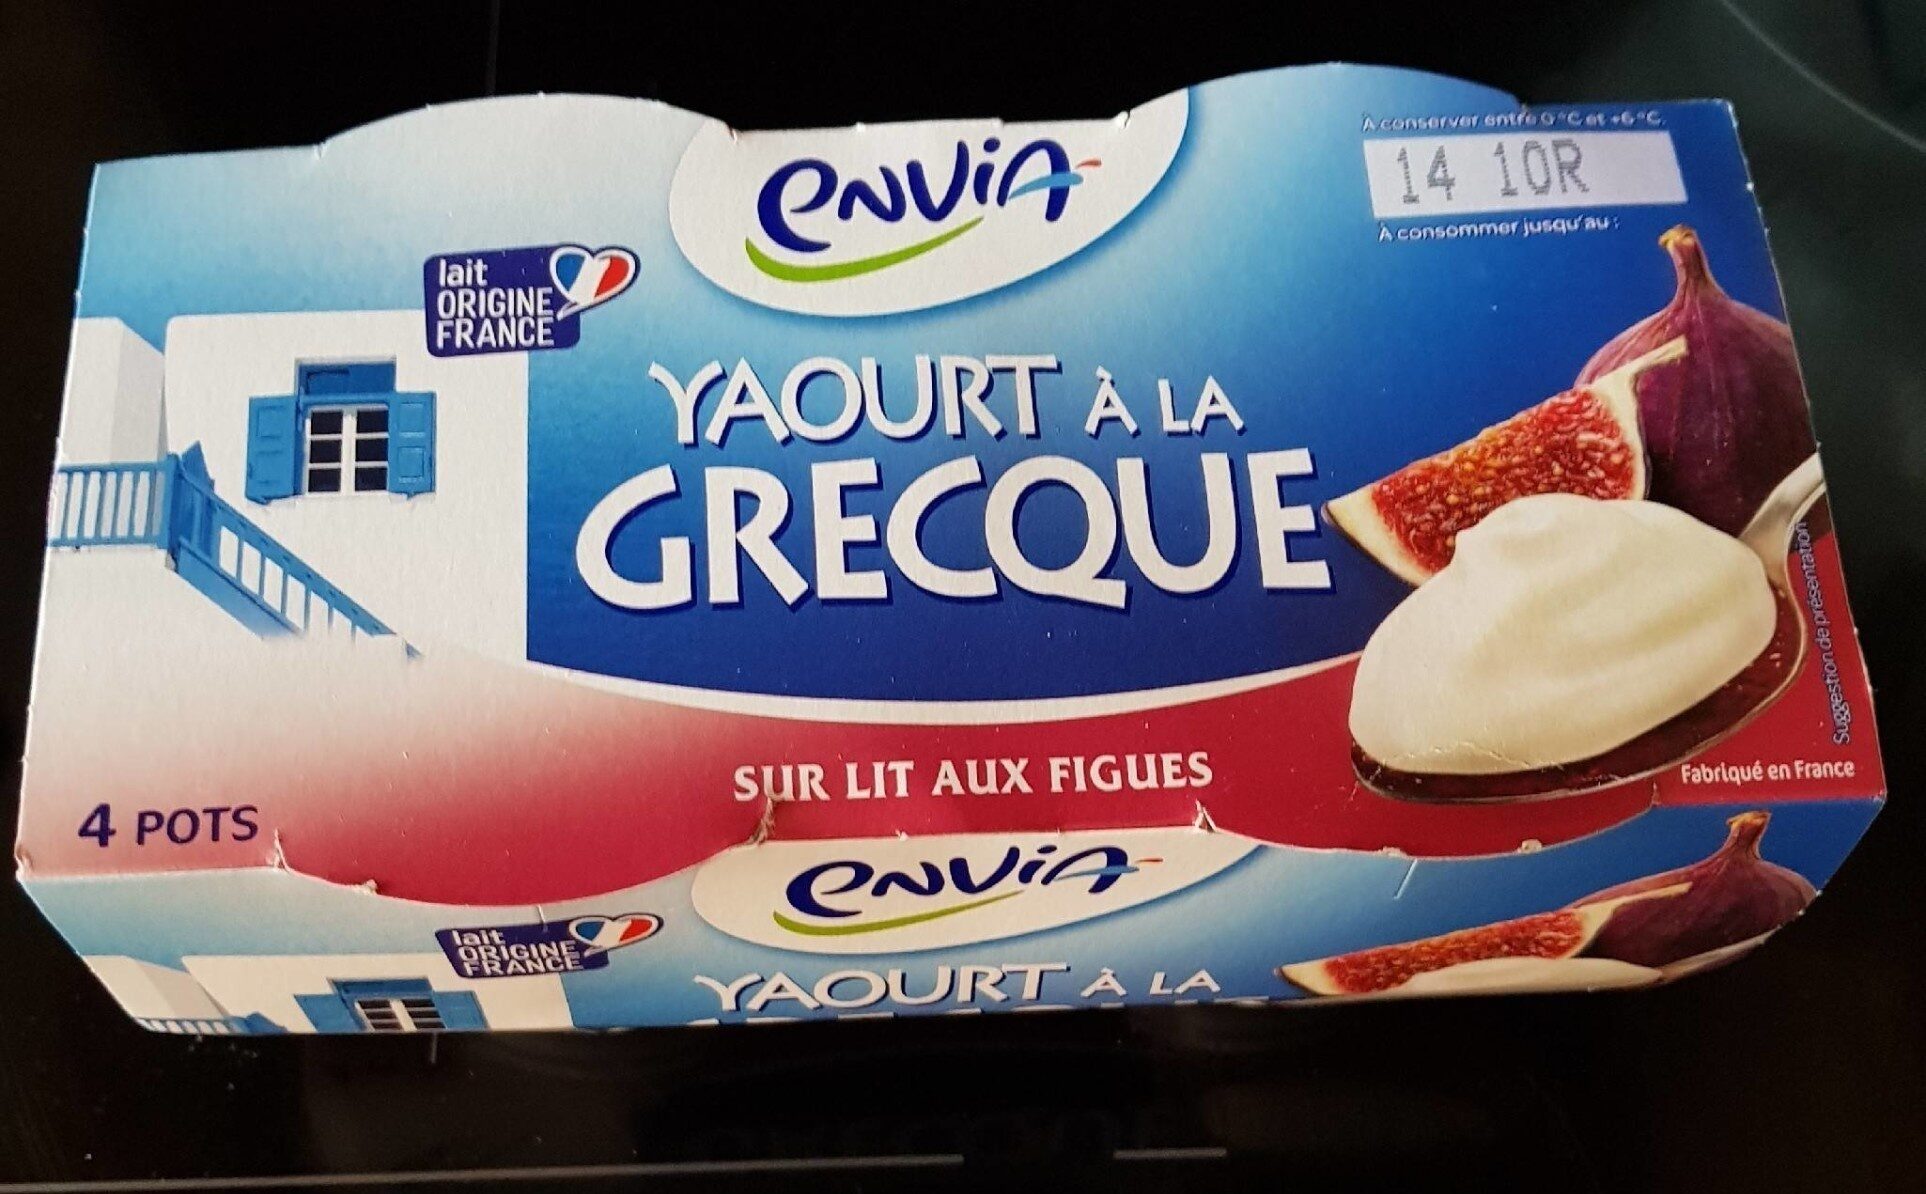 yaourt à la grecque sur lit aux figues - Product - fr